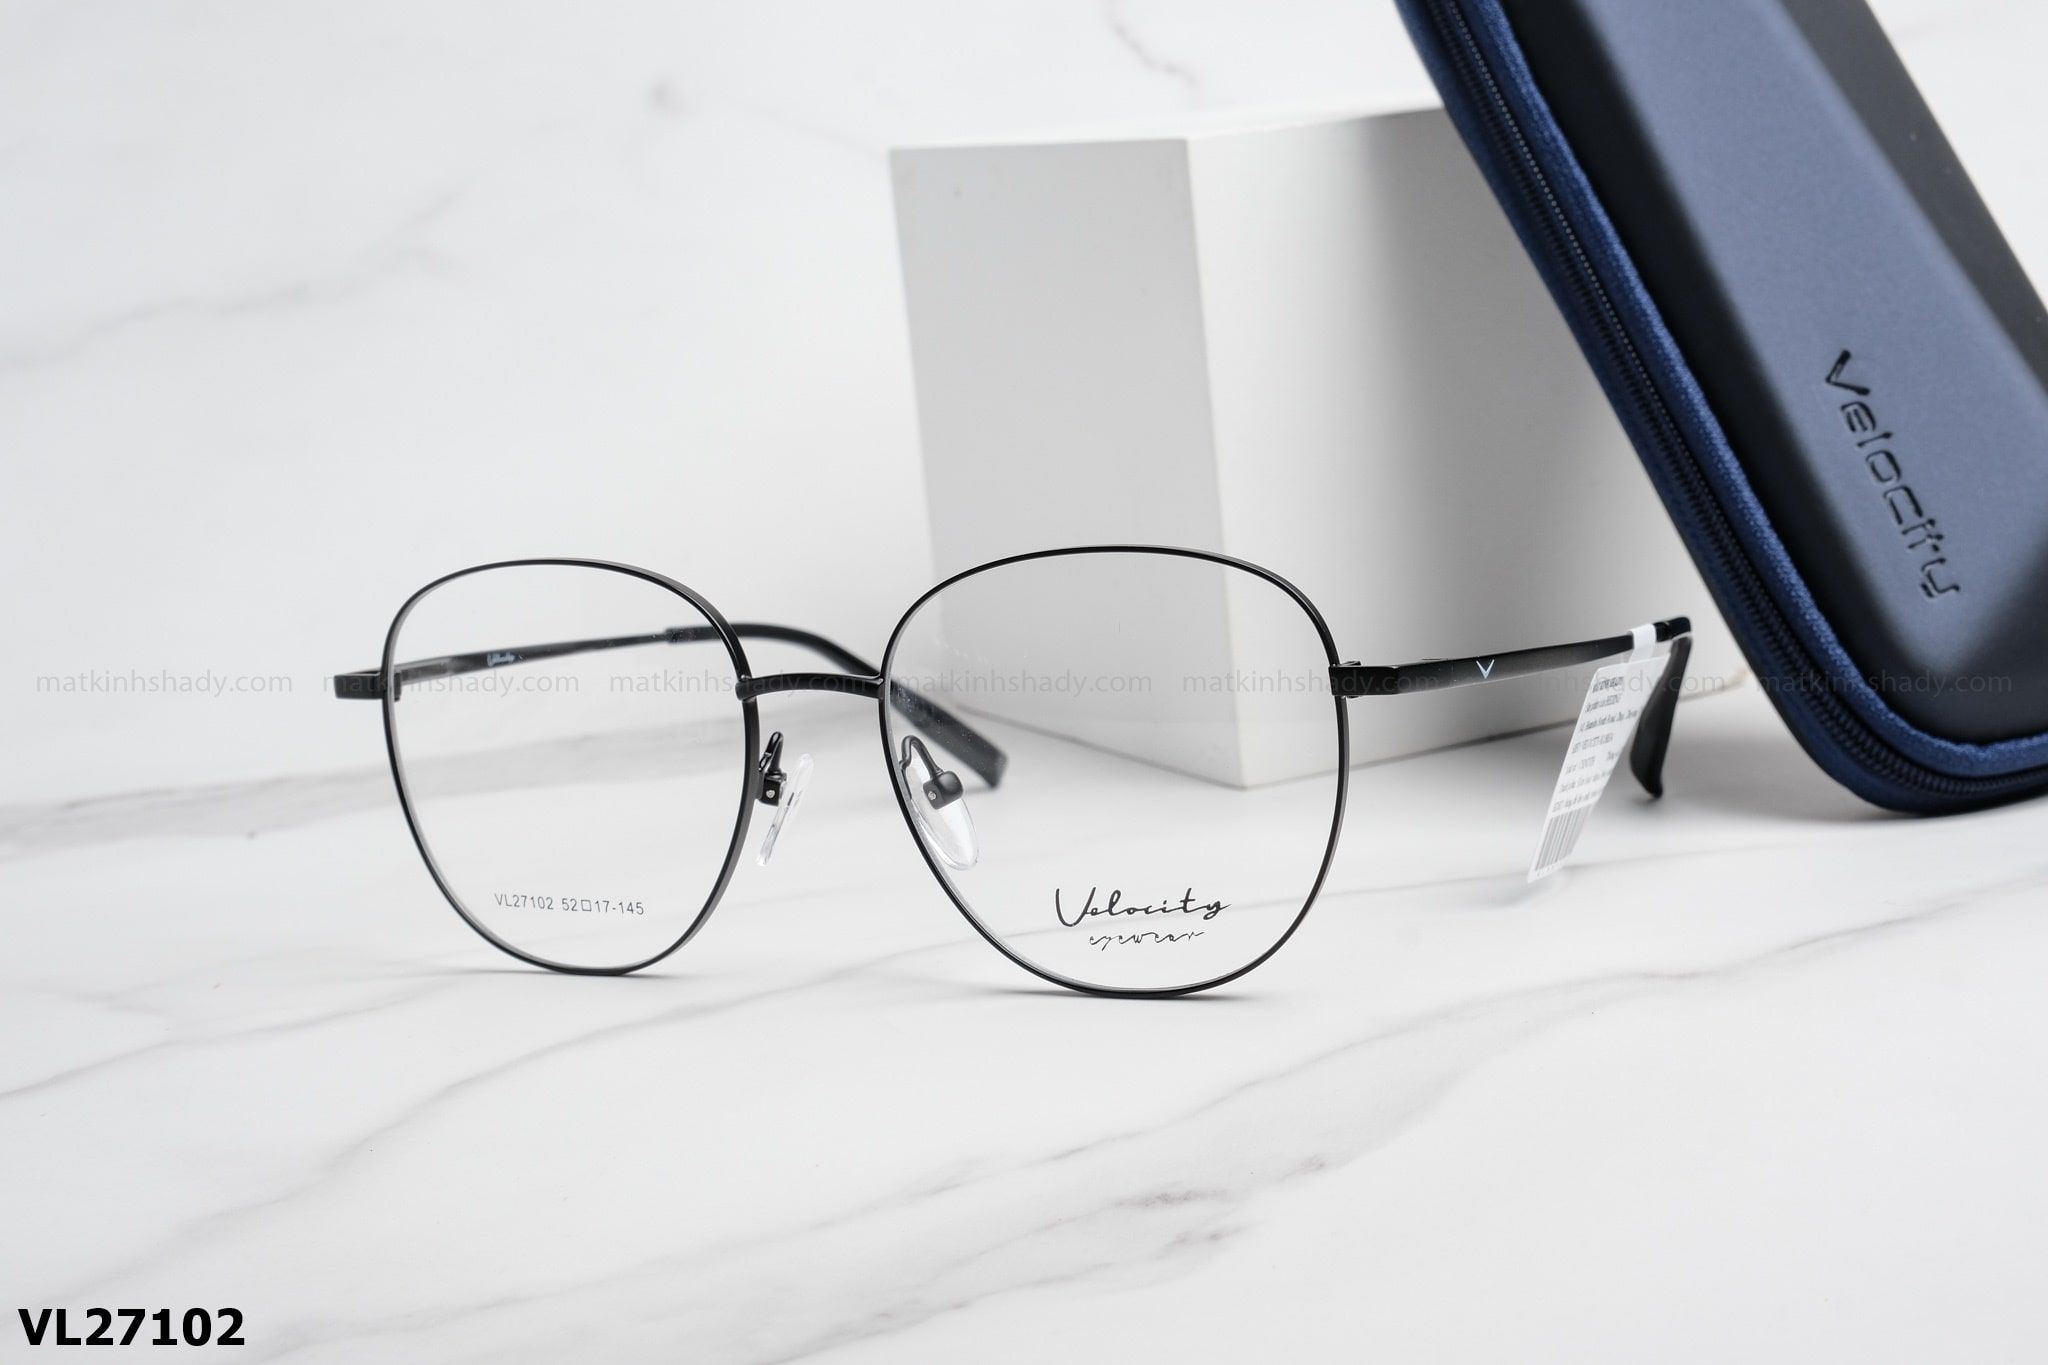  Velocity Eyewear - Glasses - VL27102 